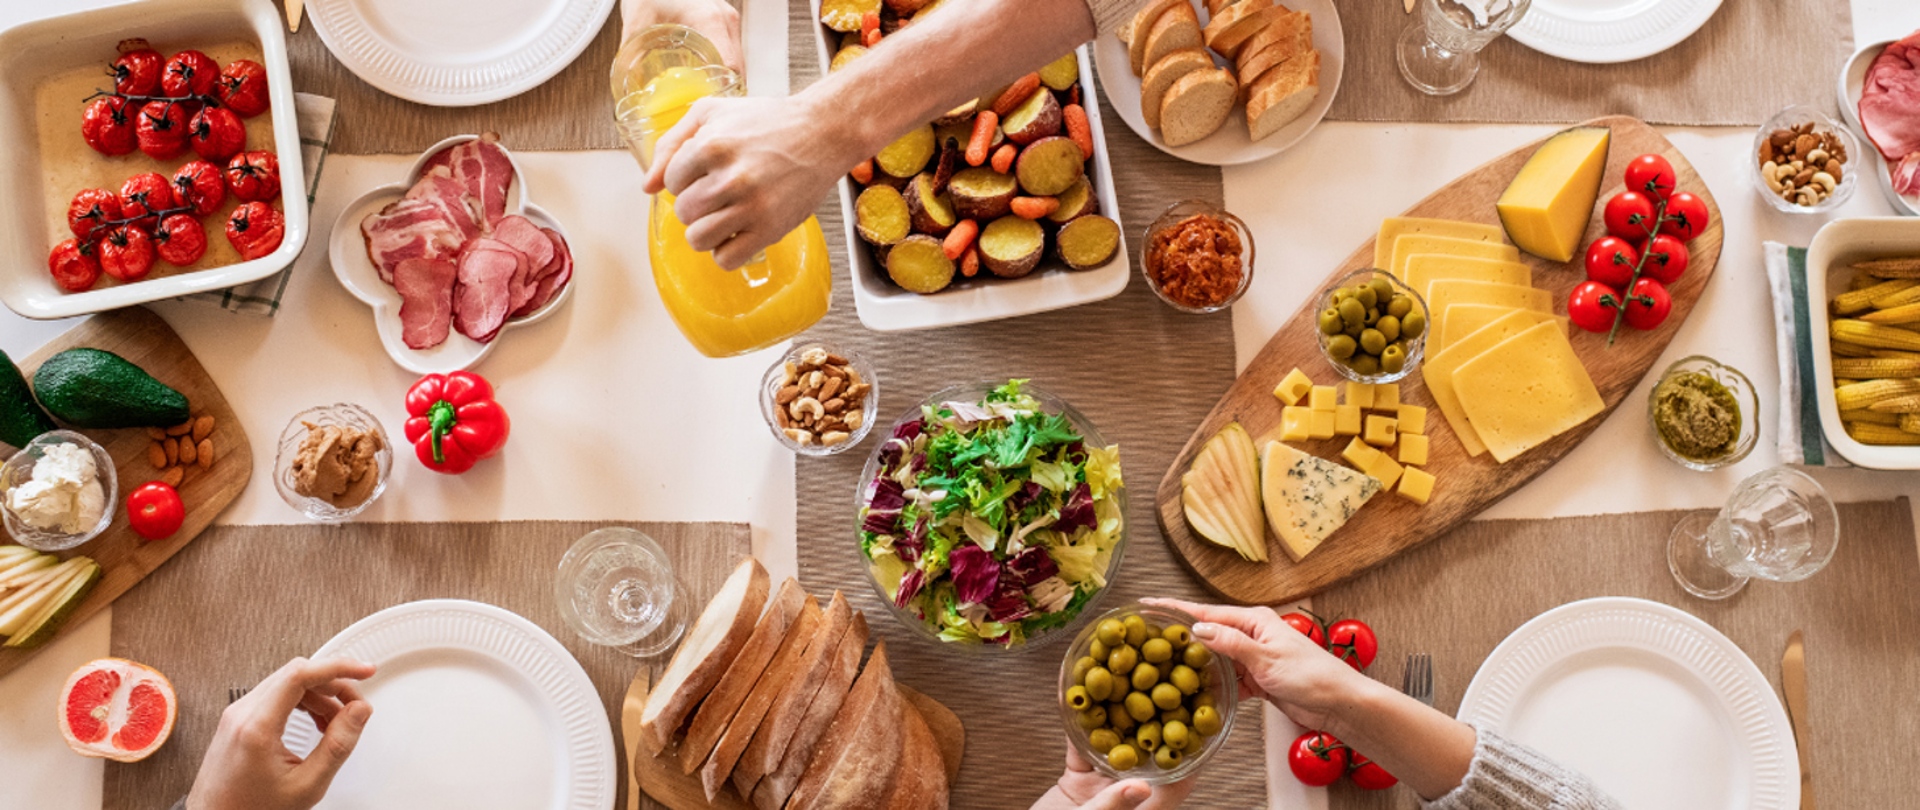 Blat stołu widziany z góry. Na stole stoją talerze i półmiski z warzywami, wędliną, chlebem, wodą i sokiem. Z góry i z dołu widać ręce dwóch osób, które sięgają po żywność. Jedzenie na stole jest bardzo kolorowe i zdrowe.